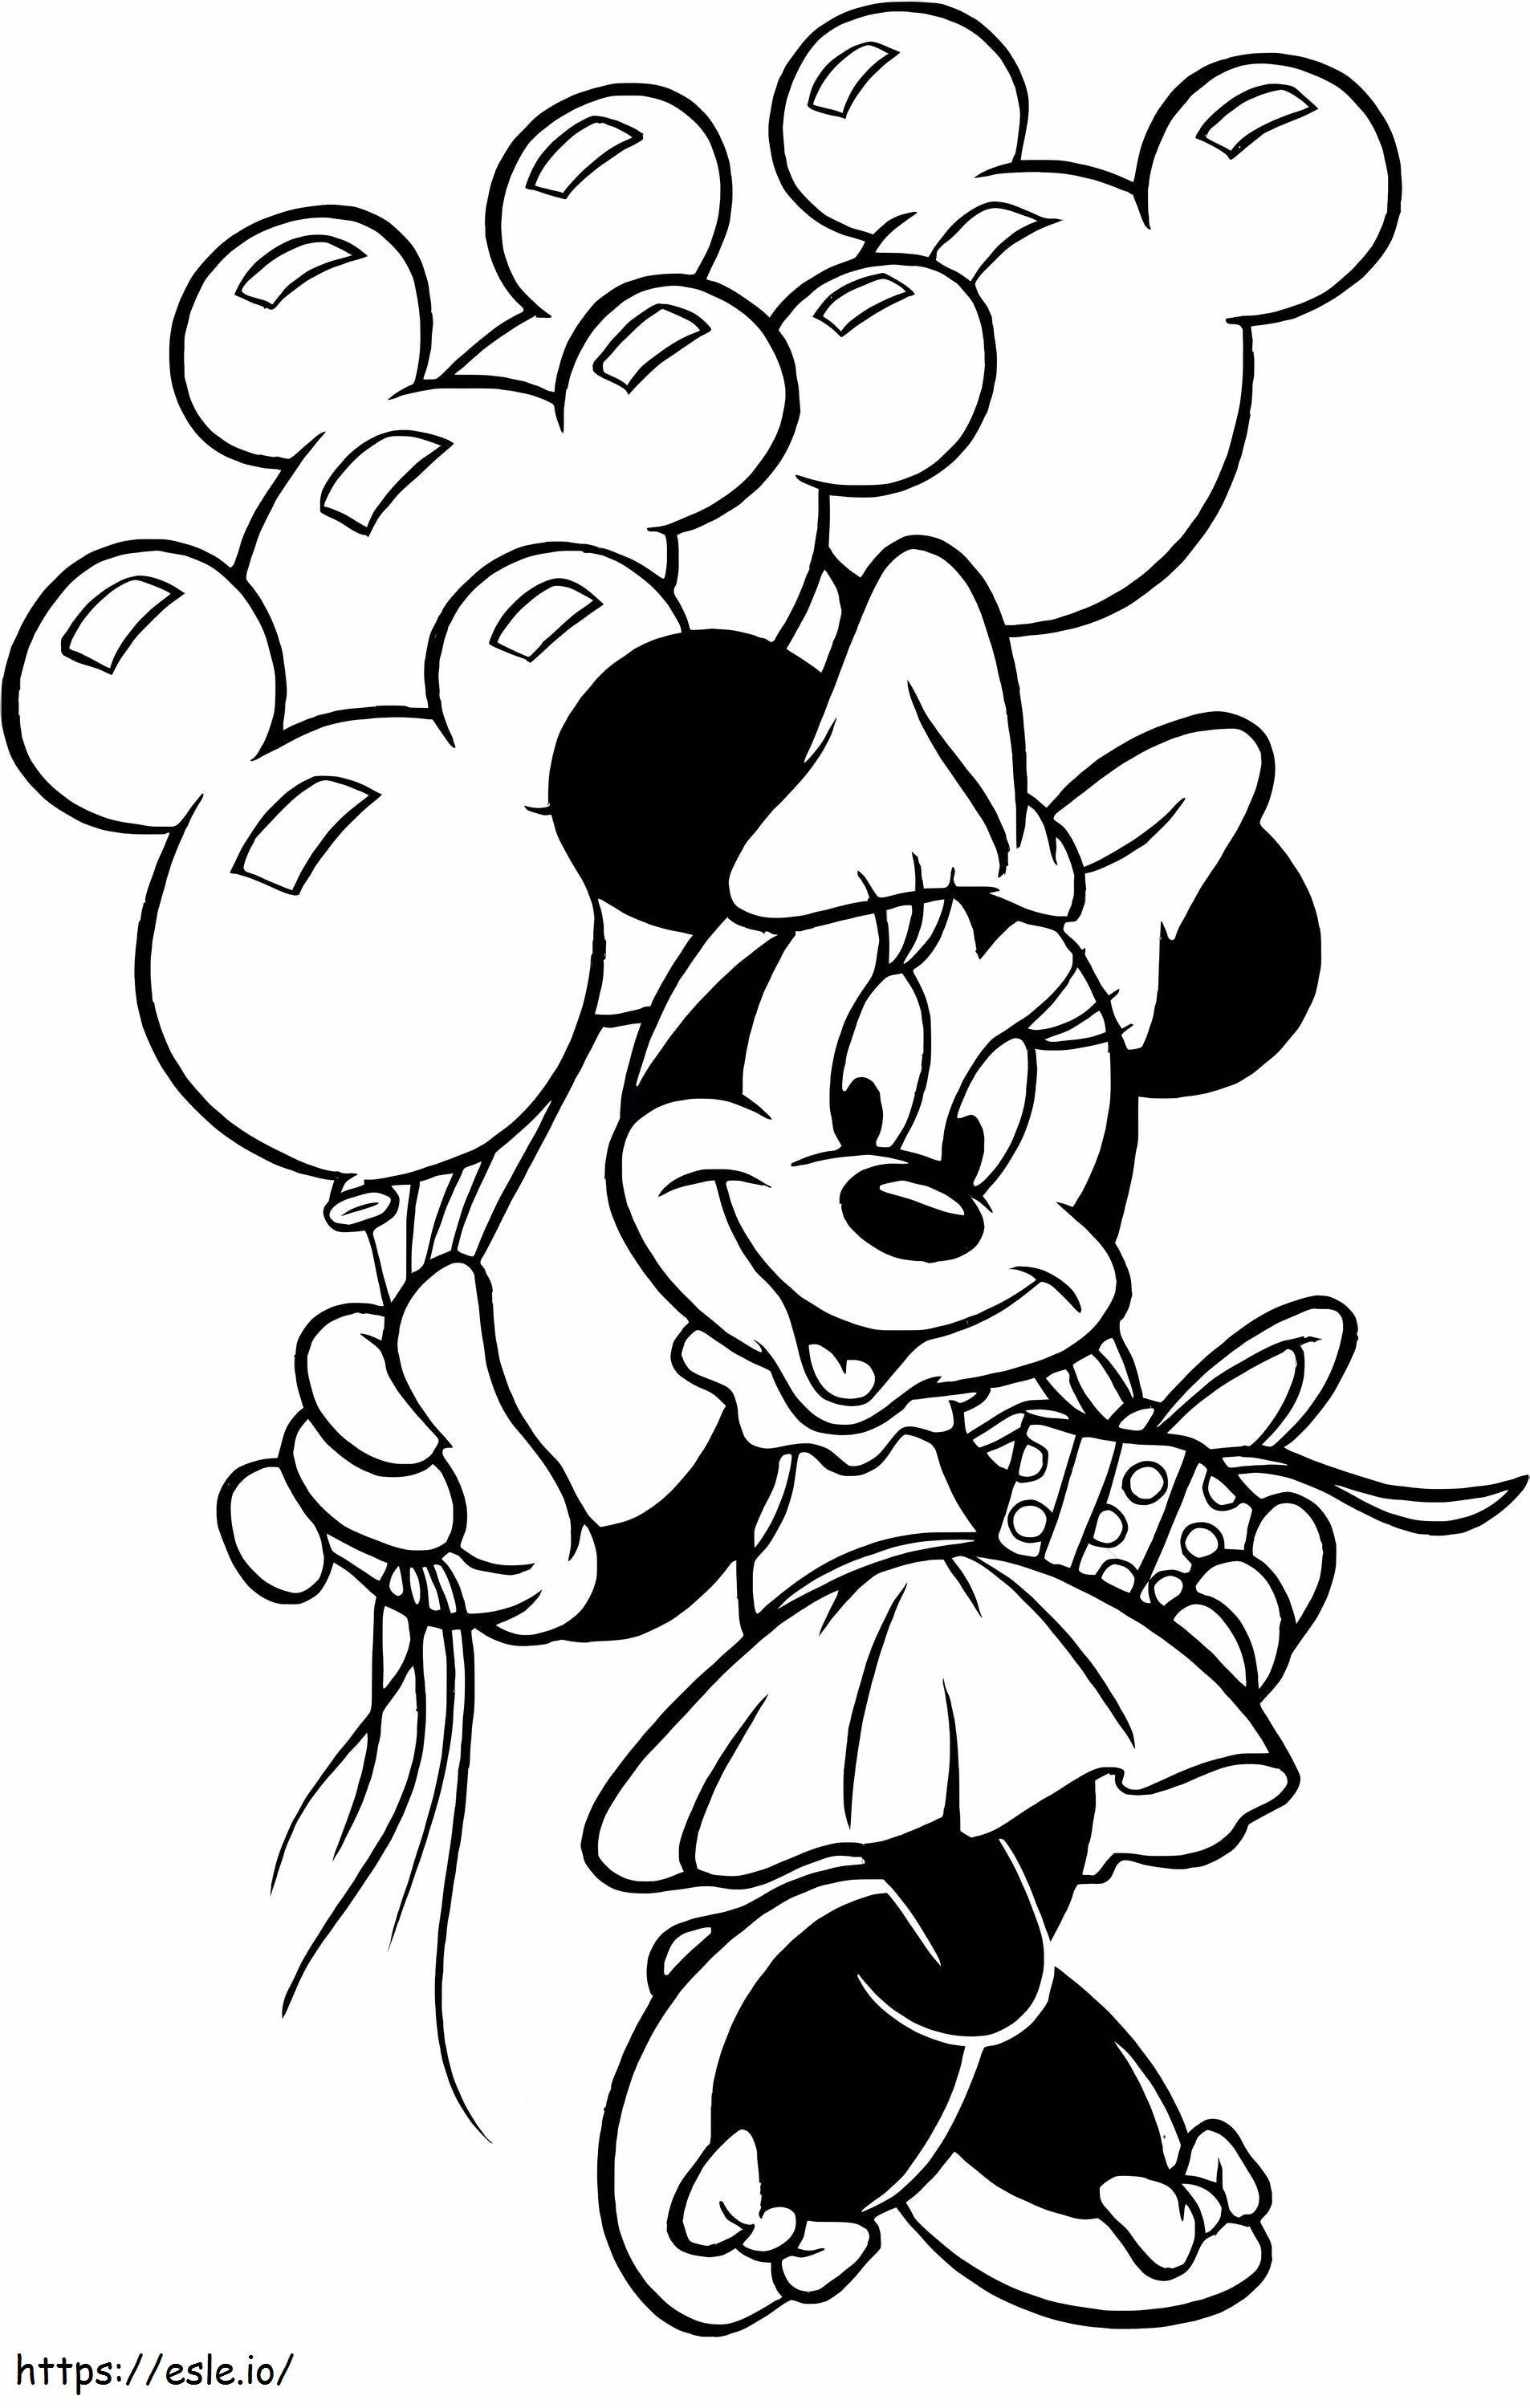 Coloriage Minnie Mouse avec boîte cadeau et ballons à Noël à imprimer dessin